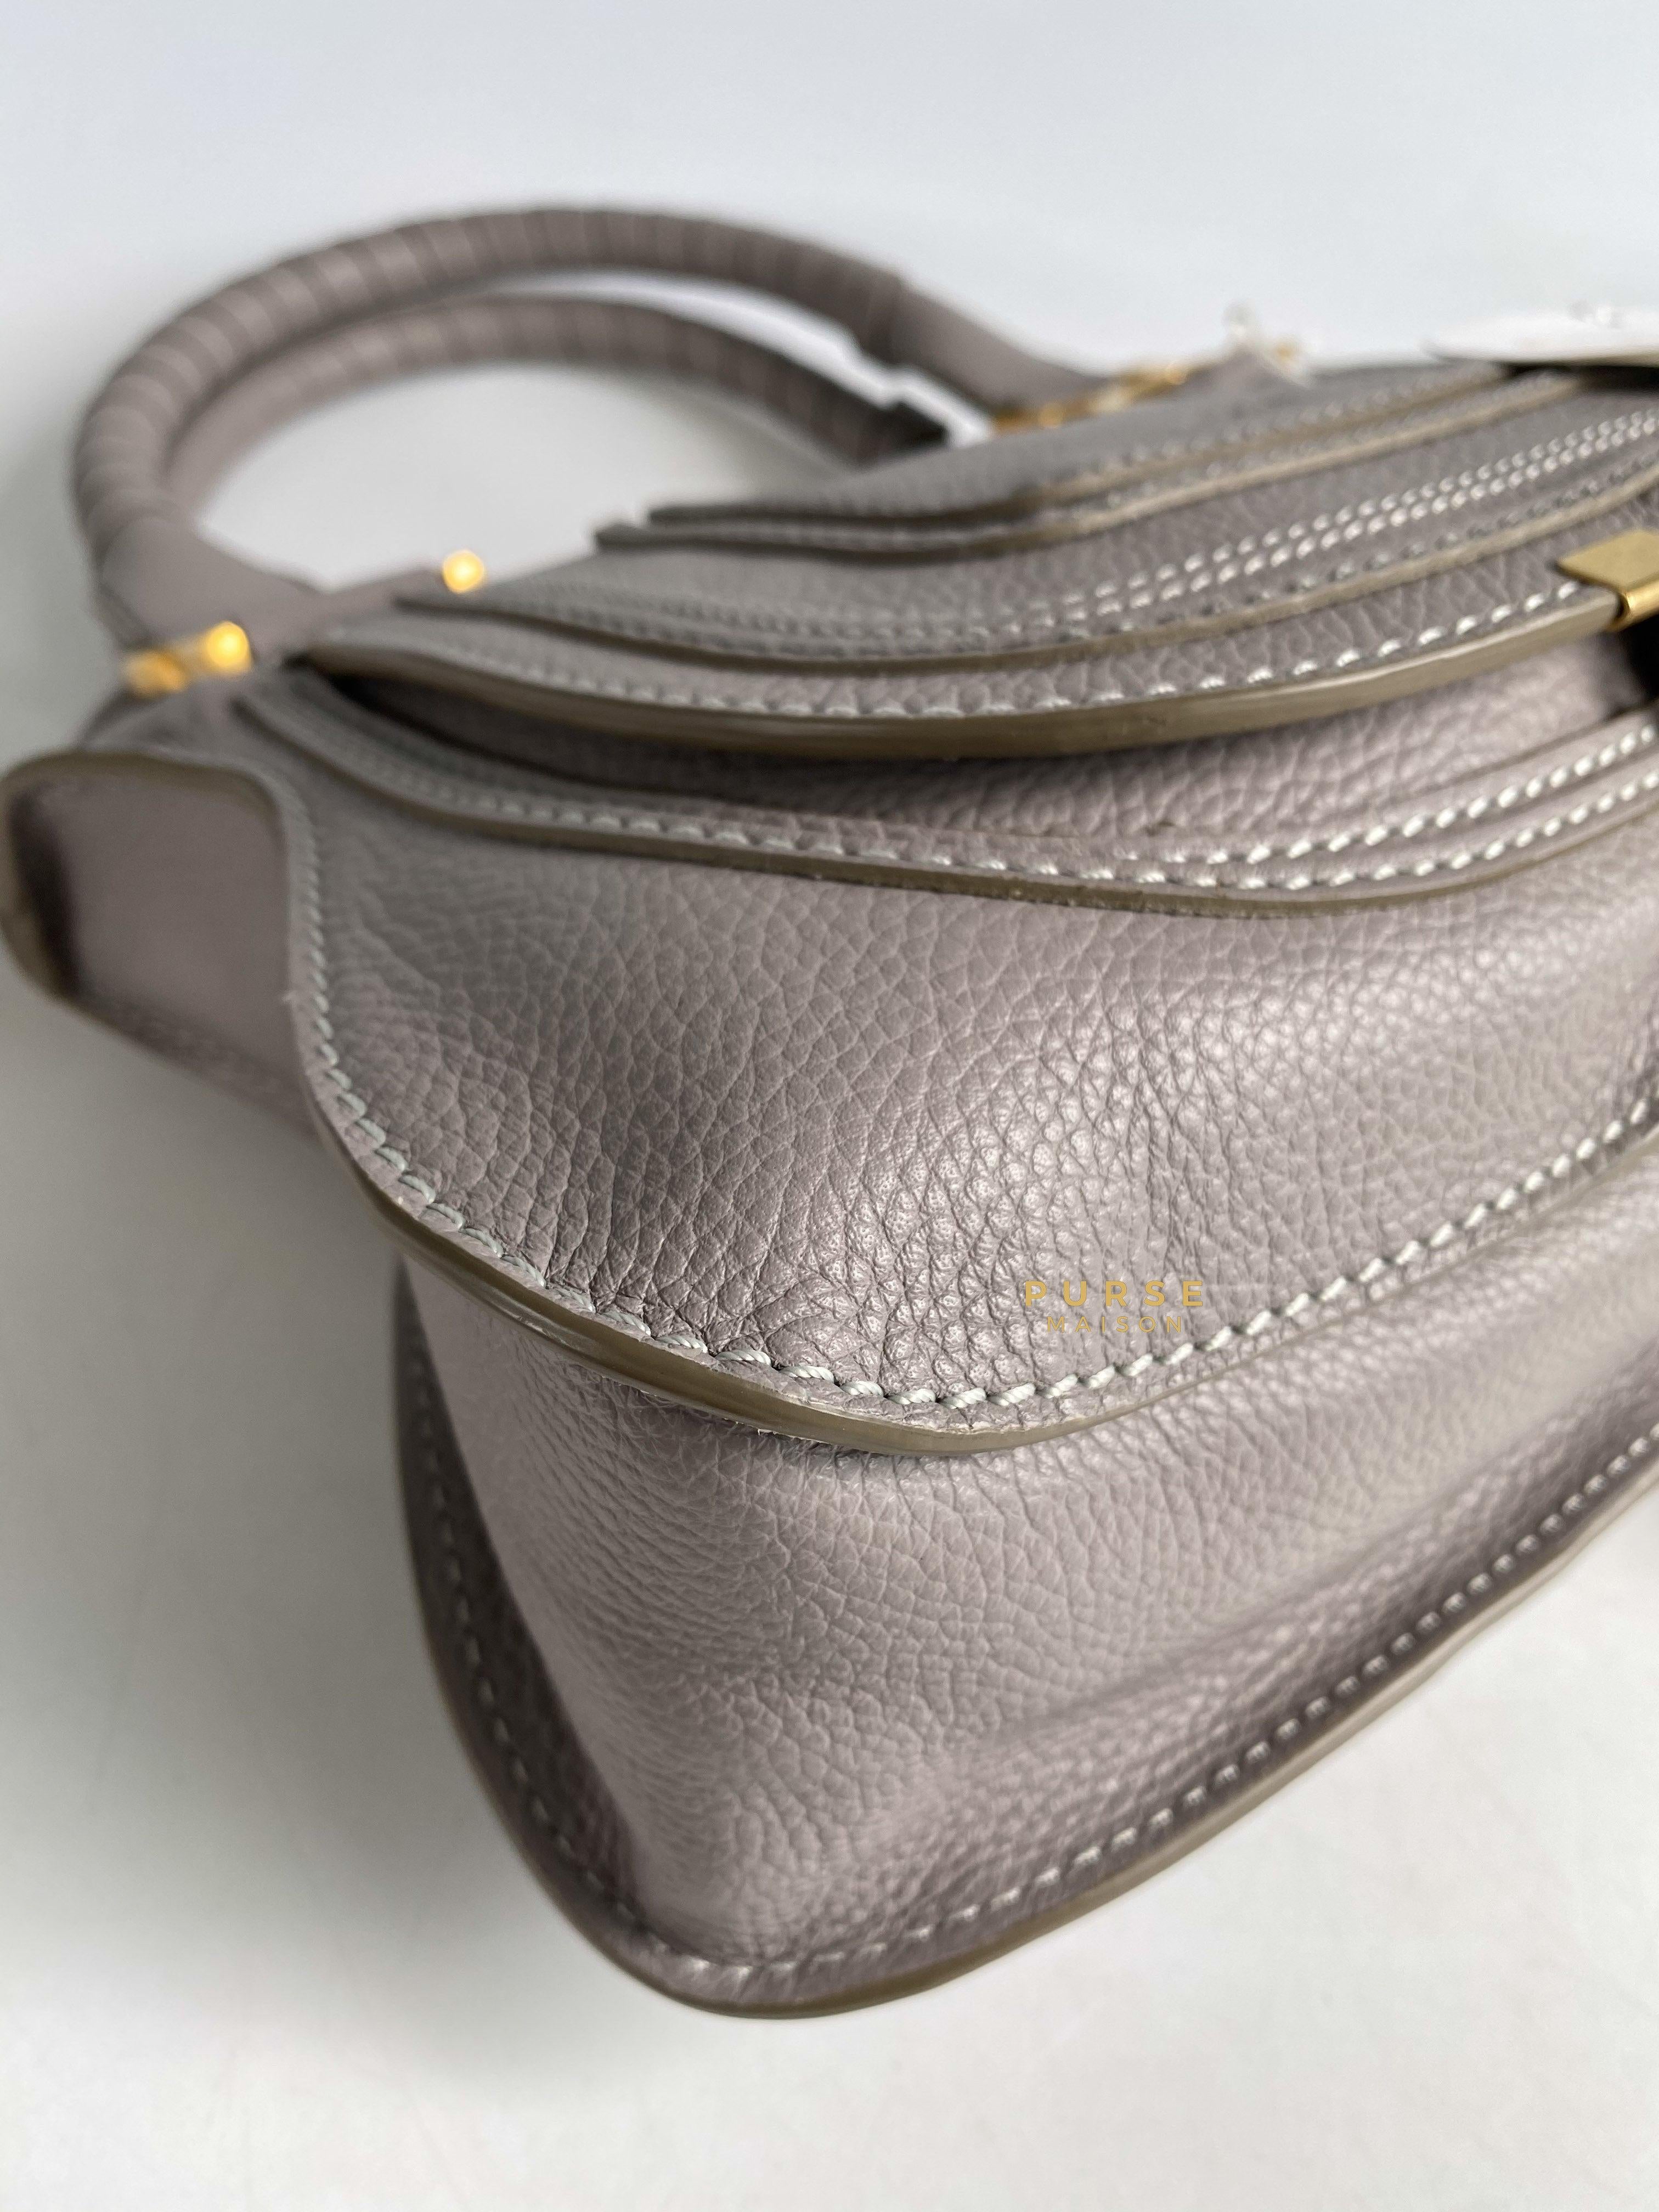 Chloe Marcie Cashmere Gray Bag | Purse Maison Luxury Bags Shop